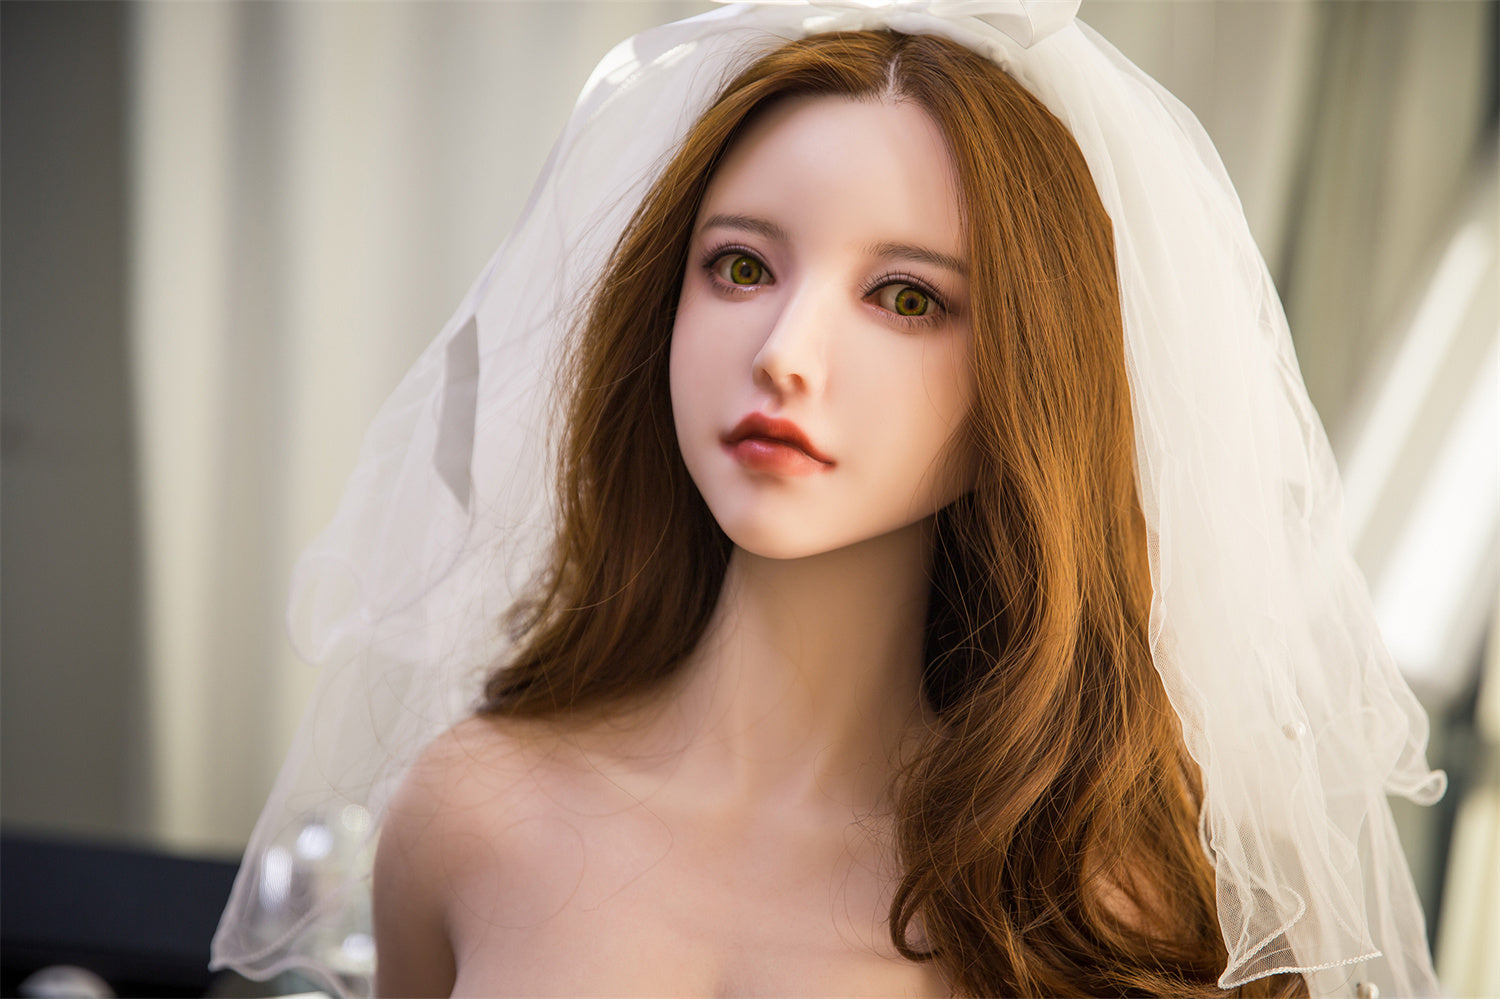 QITA Doll 162 cm Silicone - Wen Wen | Sex Dolls SG